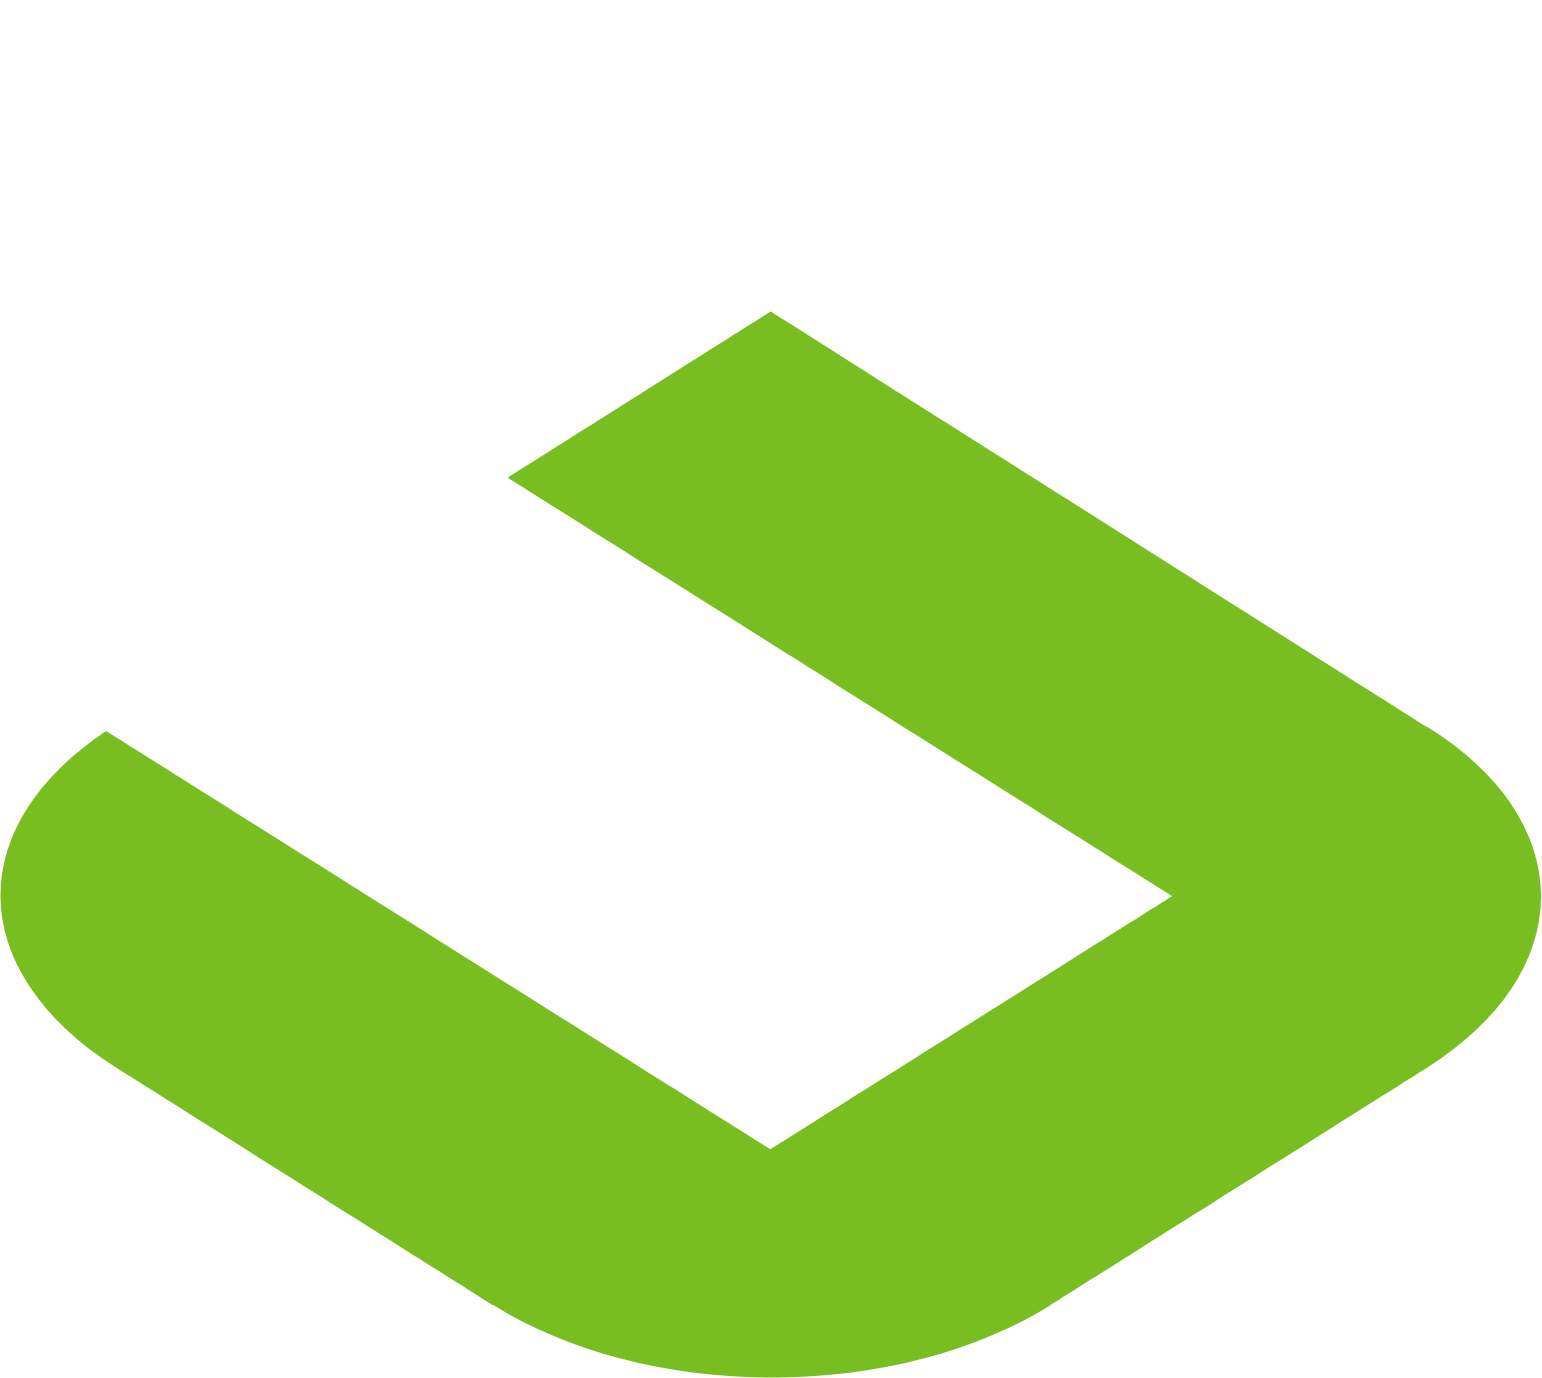 Symbotic logo pour fonds sombres (PNG transparent)